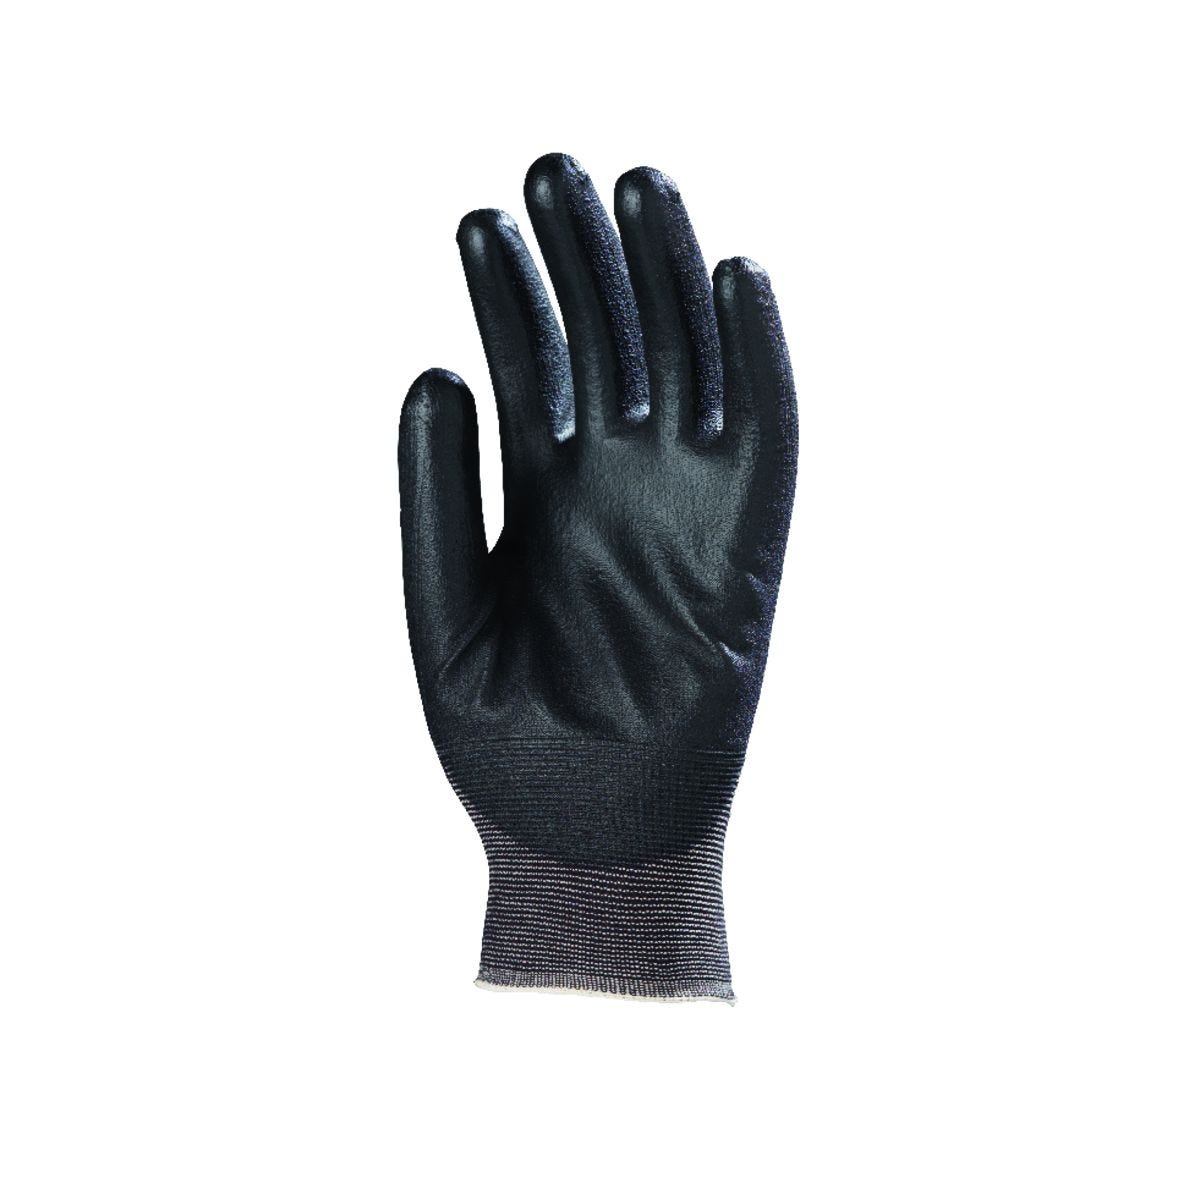 Gants EUROLIGHT nylon noir paume enduite PU noir - COVERGUARD - Taille XL-10 1